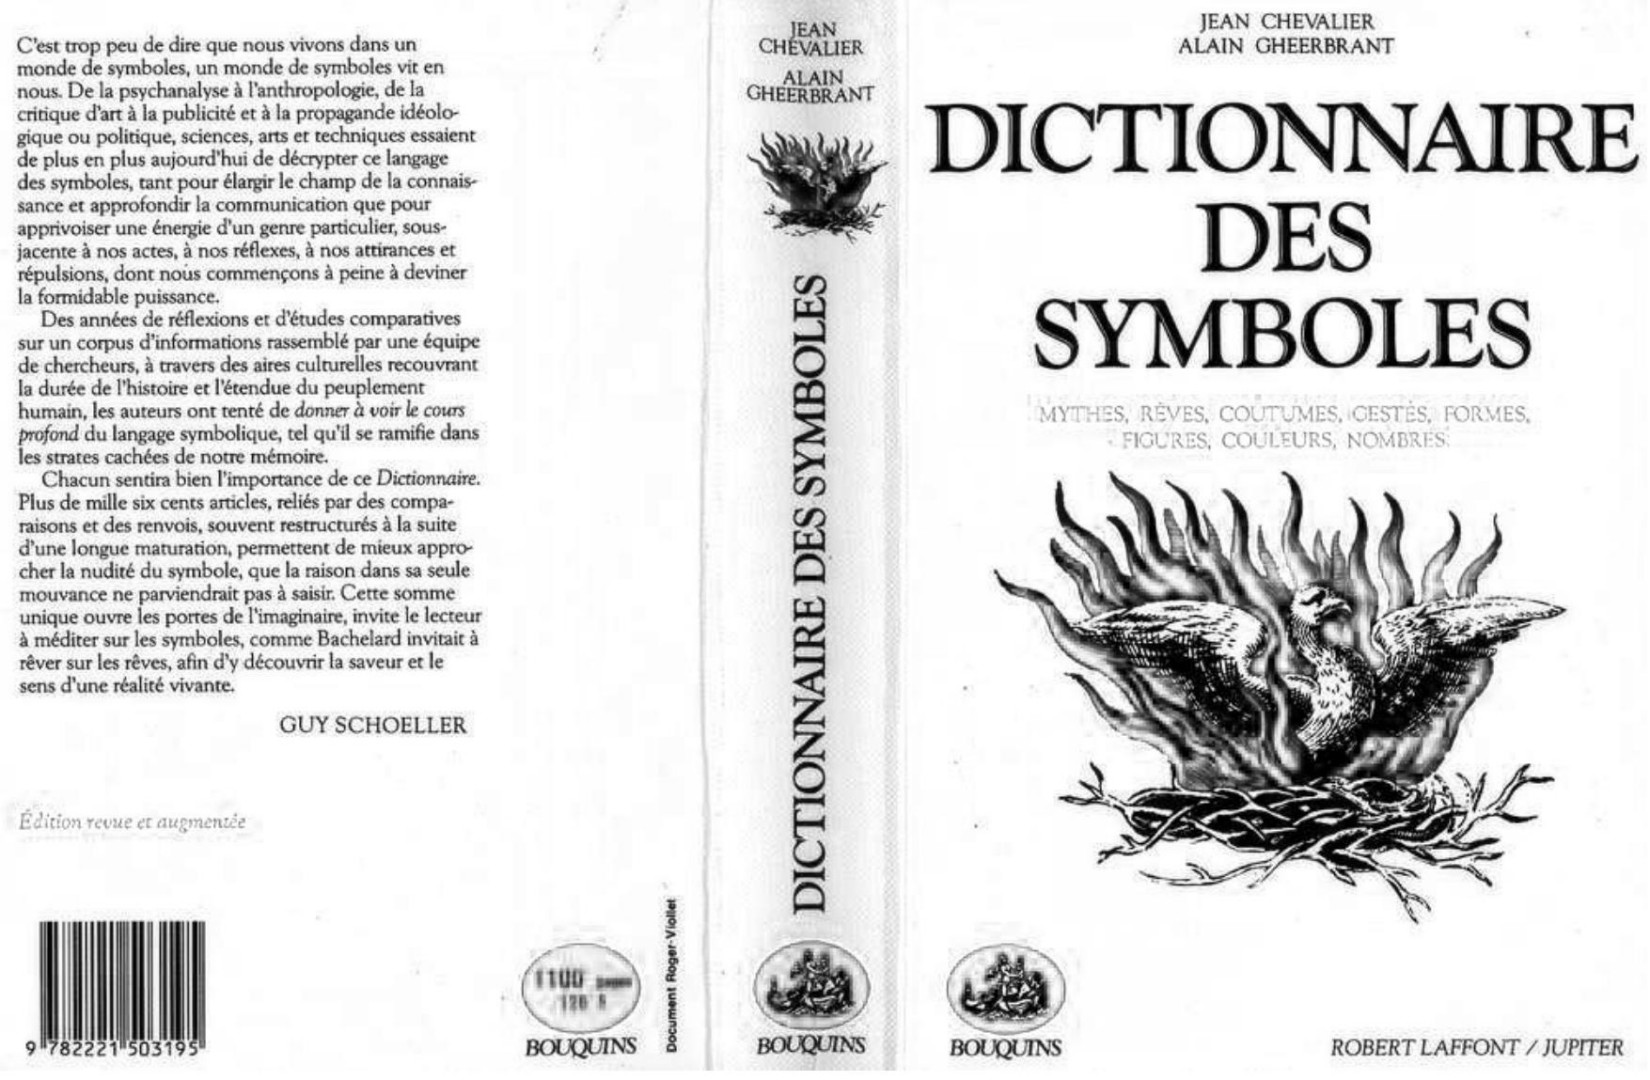 DICTIONNAIRE DES SYMBOLES 1969